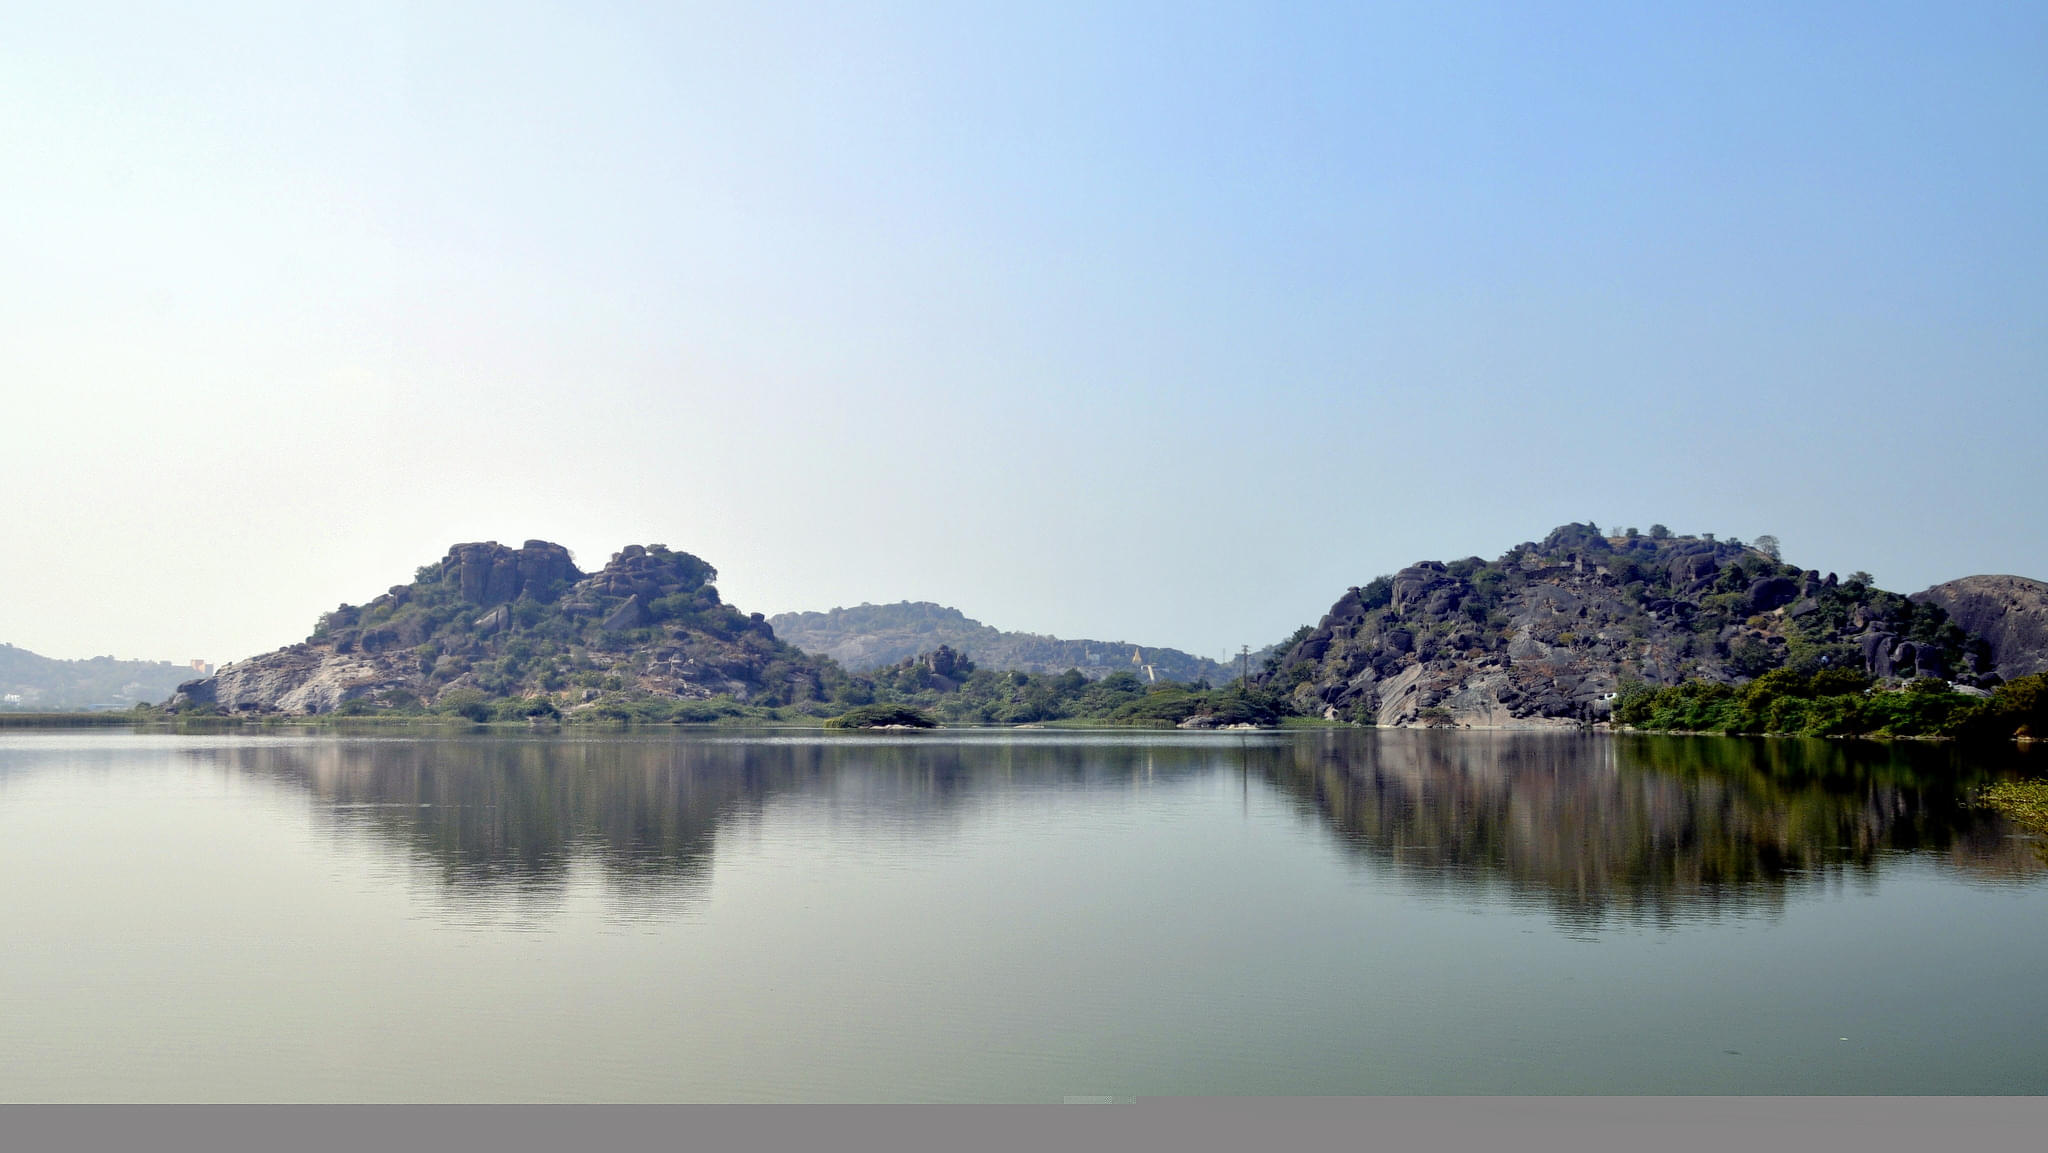 Bhadrakali Lake Overview